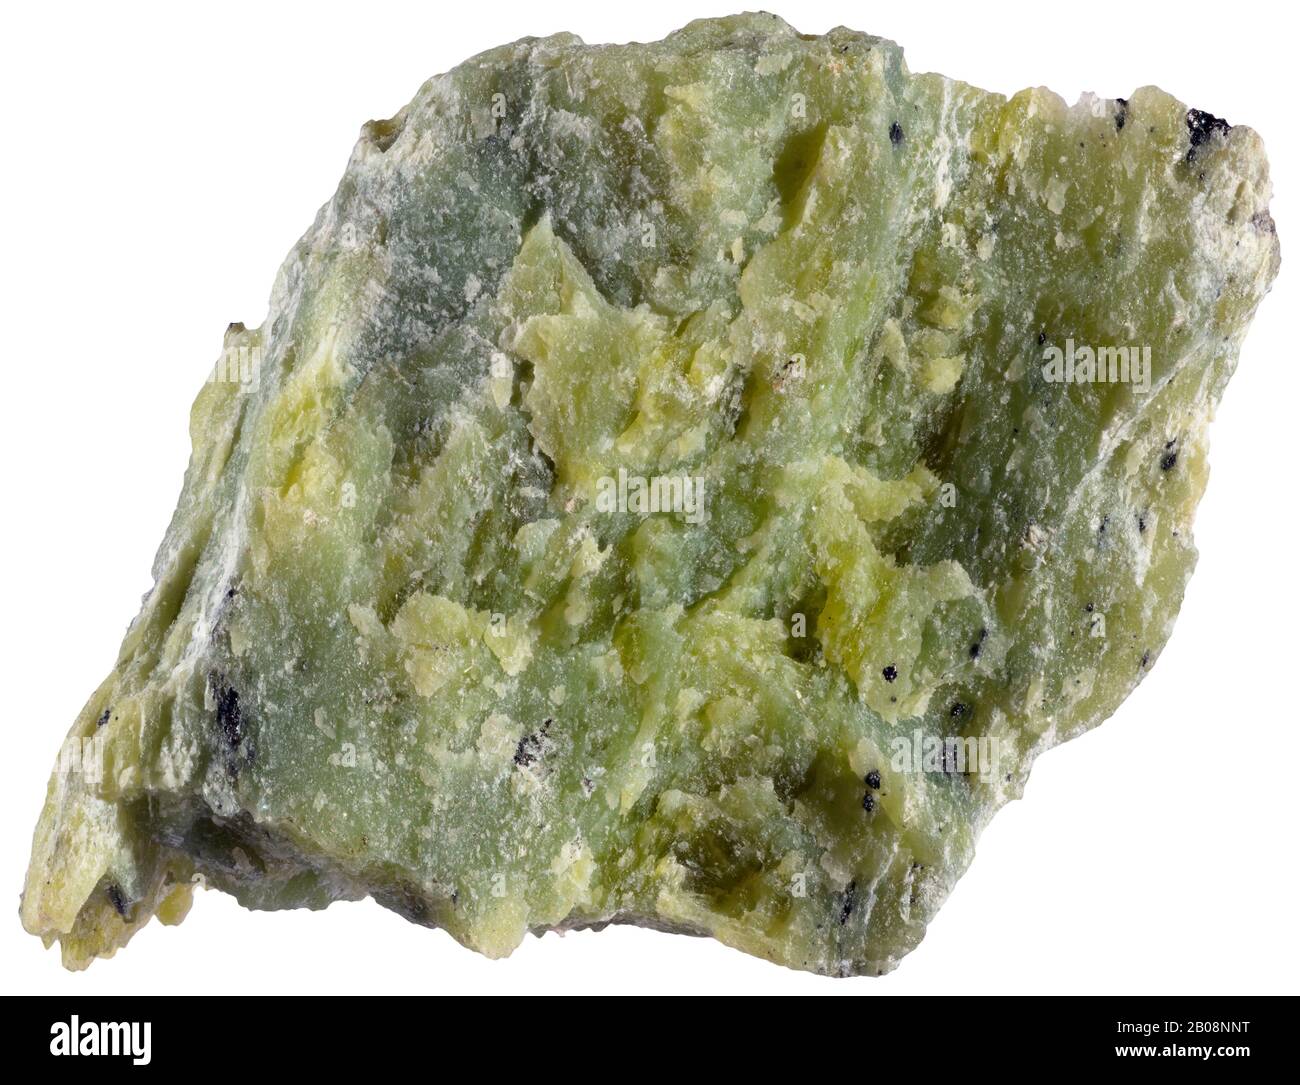 Steirische Jade, Thetford Mines, Quebec Steirische Jade ist eine Vielzahl von Klinochloriten, aluminösen Serpentinen und pennine, die Jade ähnelt. Keine echte Jade Stockfoto